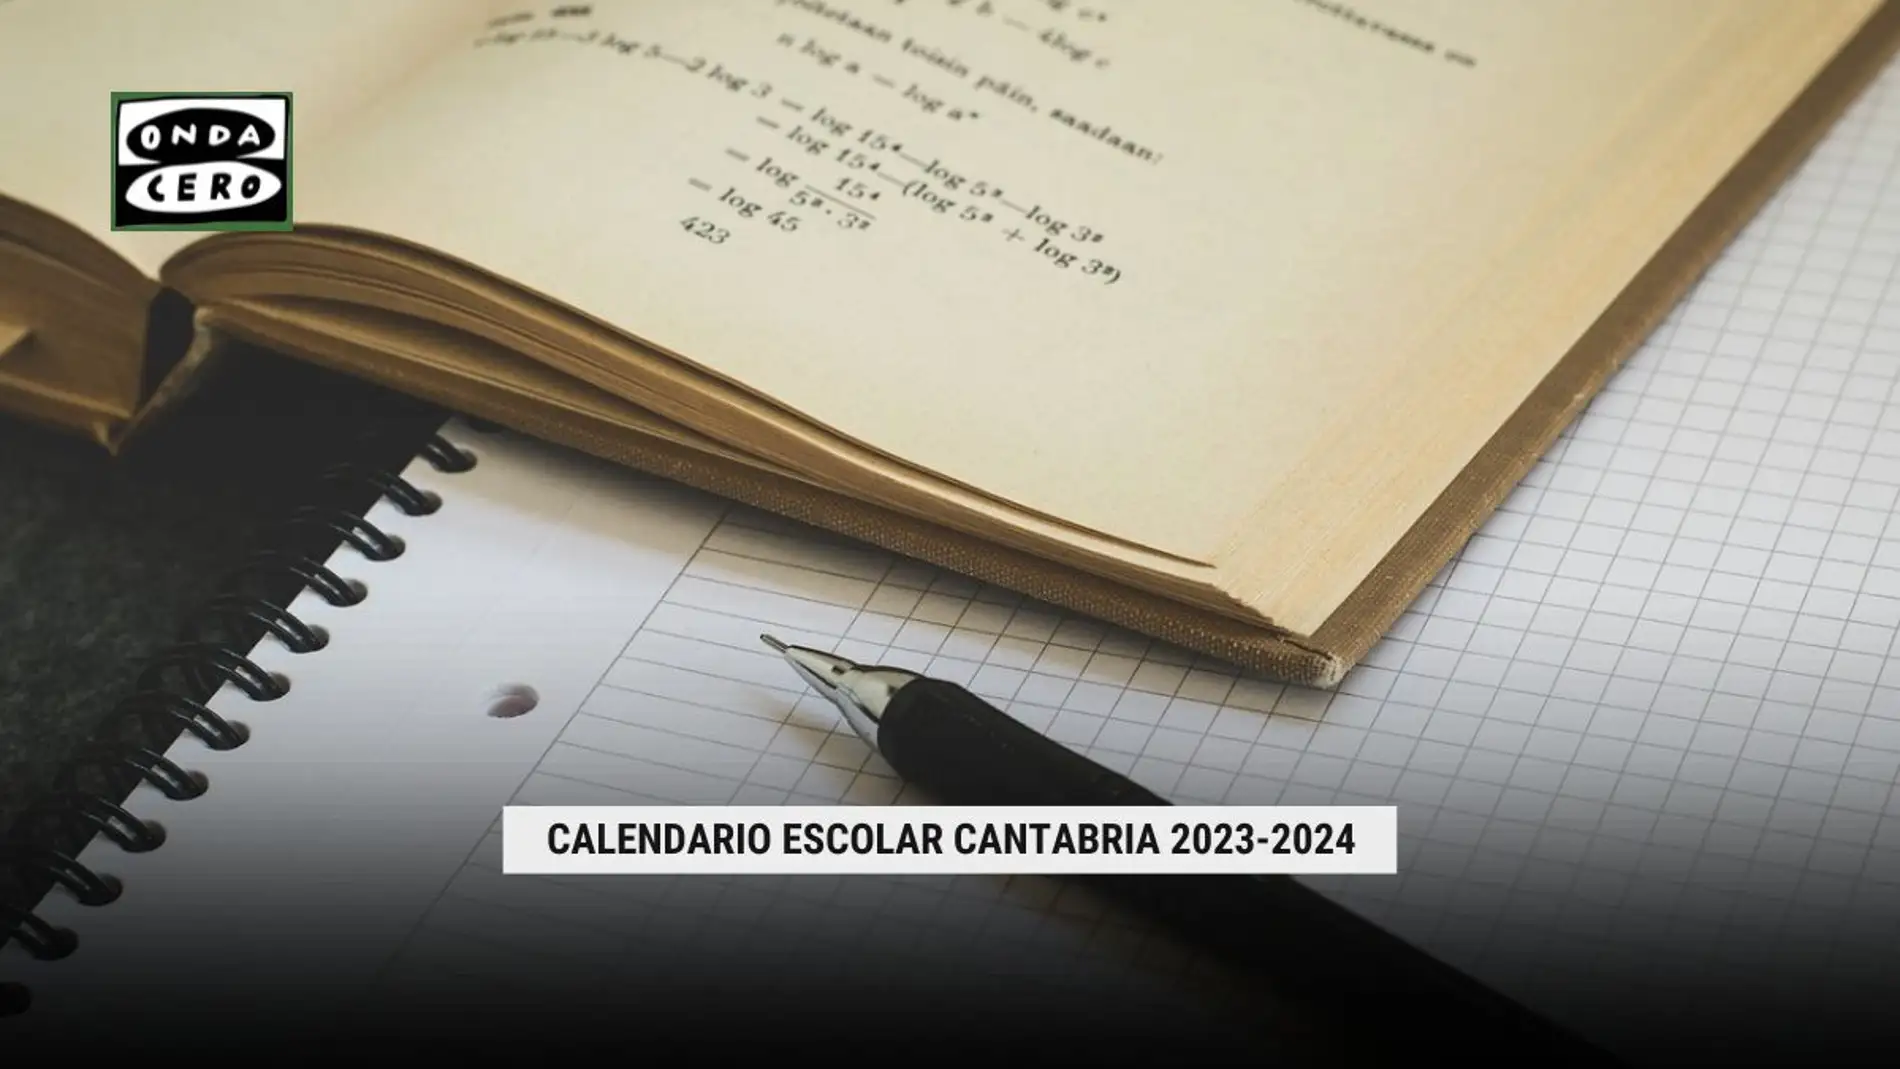 El BOC publica el calendario escolar de Cantabria 2023/2024: semanas no lectivas, puentes y vacaciones